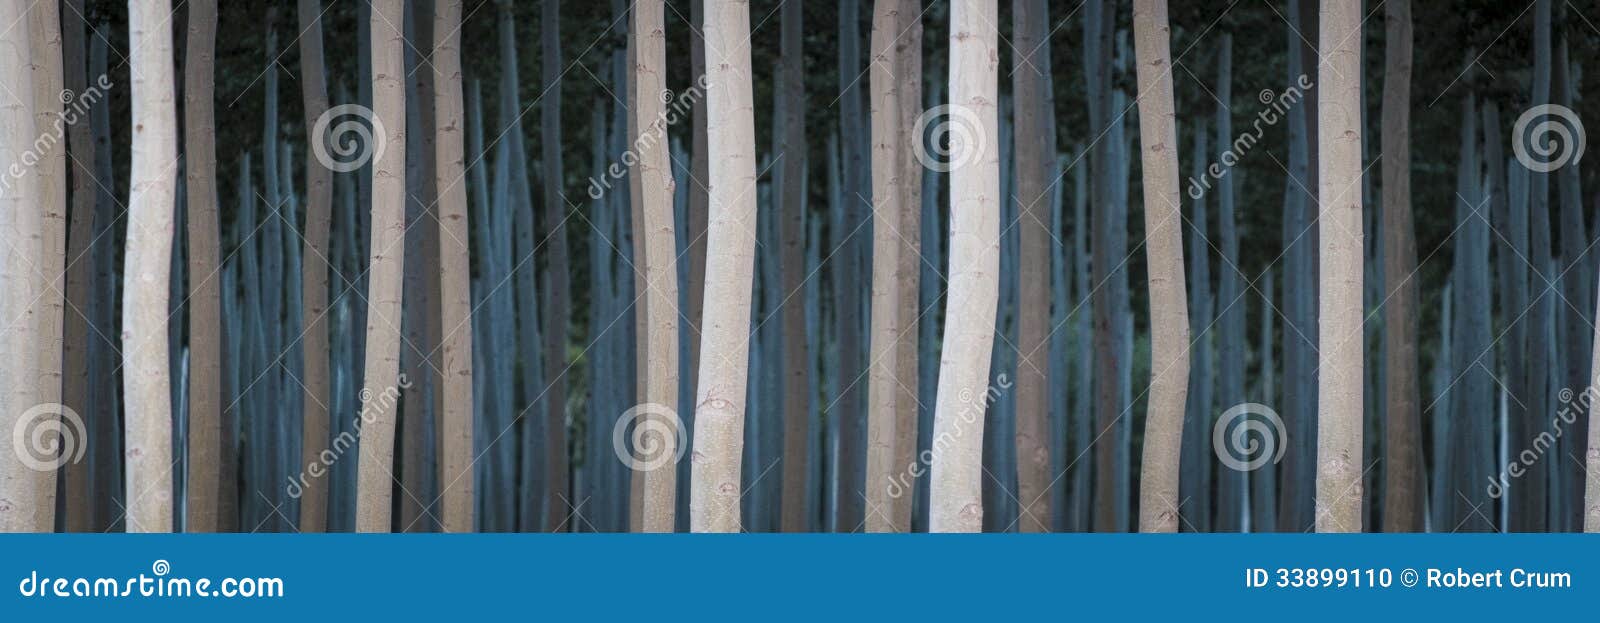 rows of poplars in a tree farm